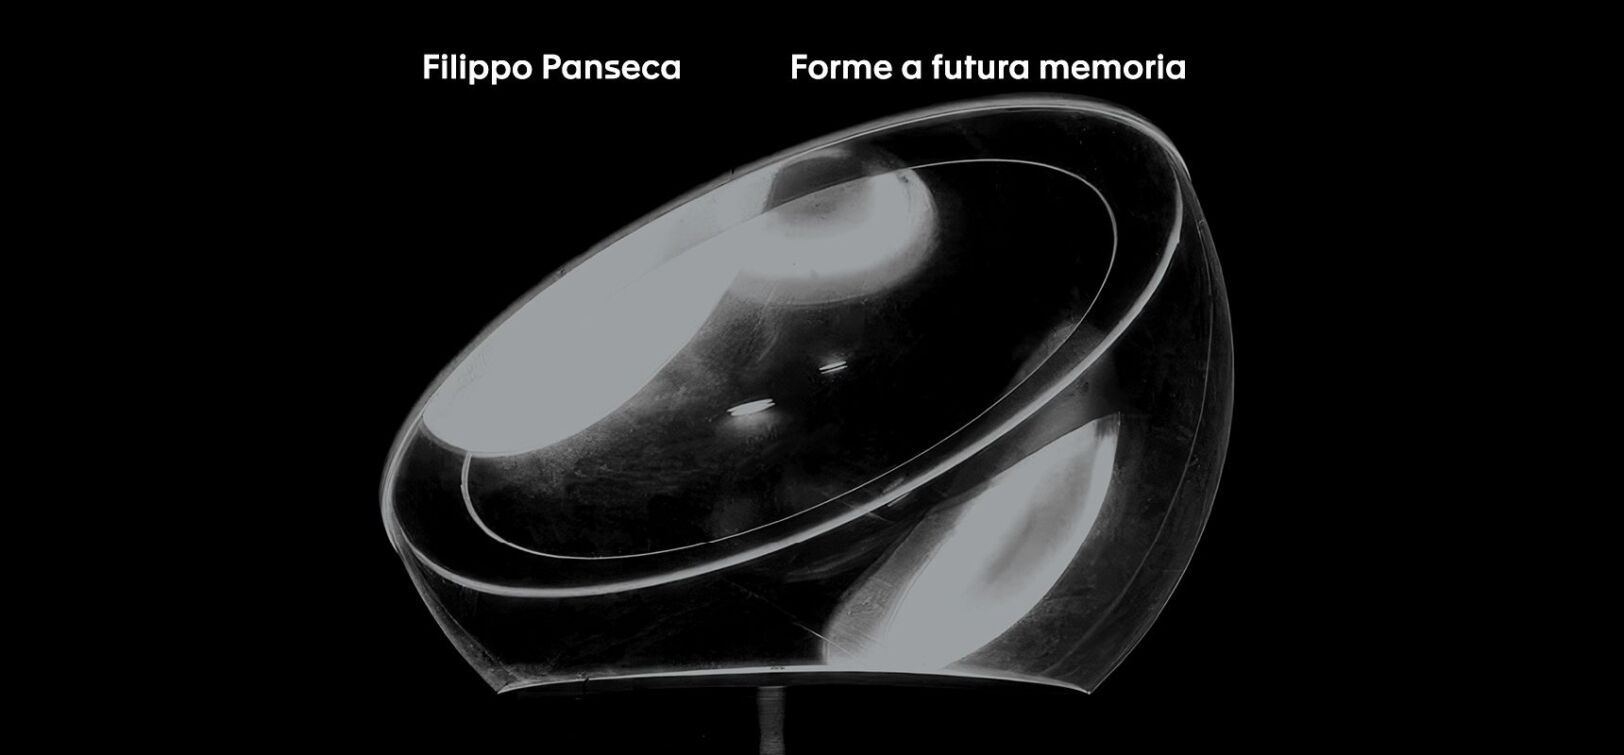 FILIPPO PANSECA: FORME A FUTURA MEMORIA